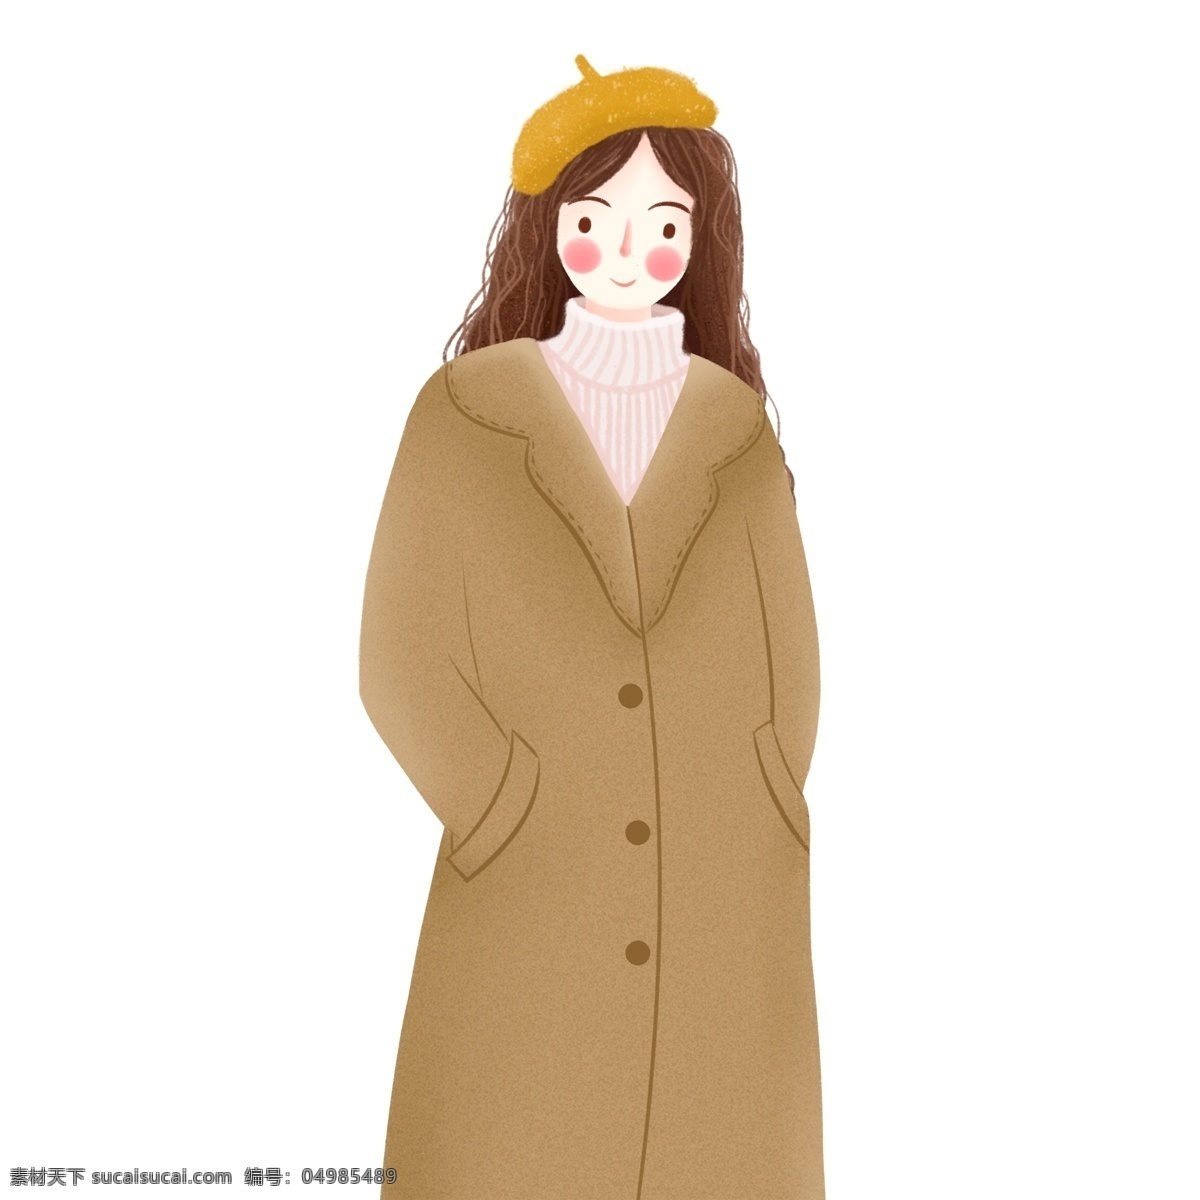 冬季 穿 驼色 大衣 女孩 商用 元素 卡通 简约 文艺 人物 手绘 女生 驼色大衣 时尚女人